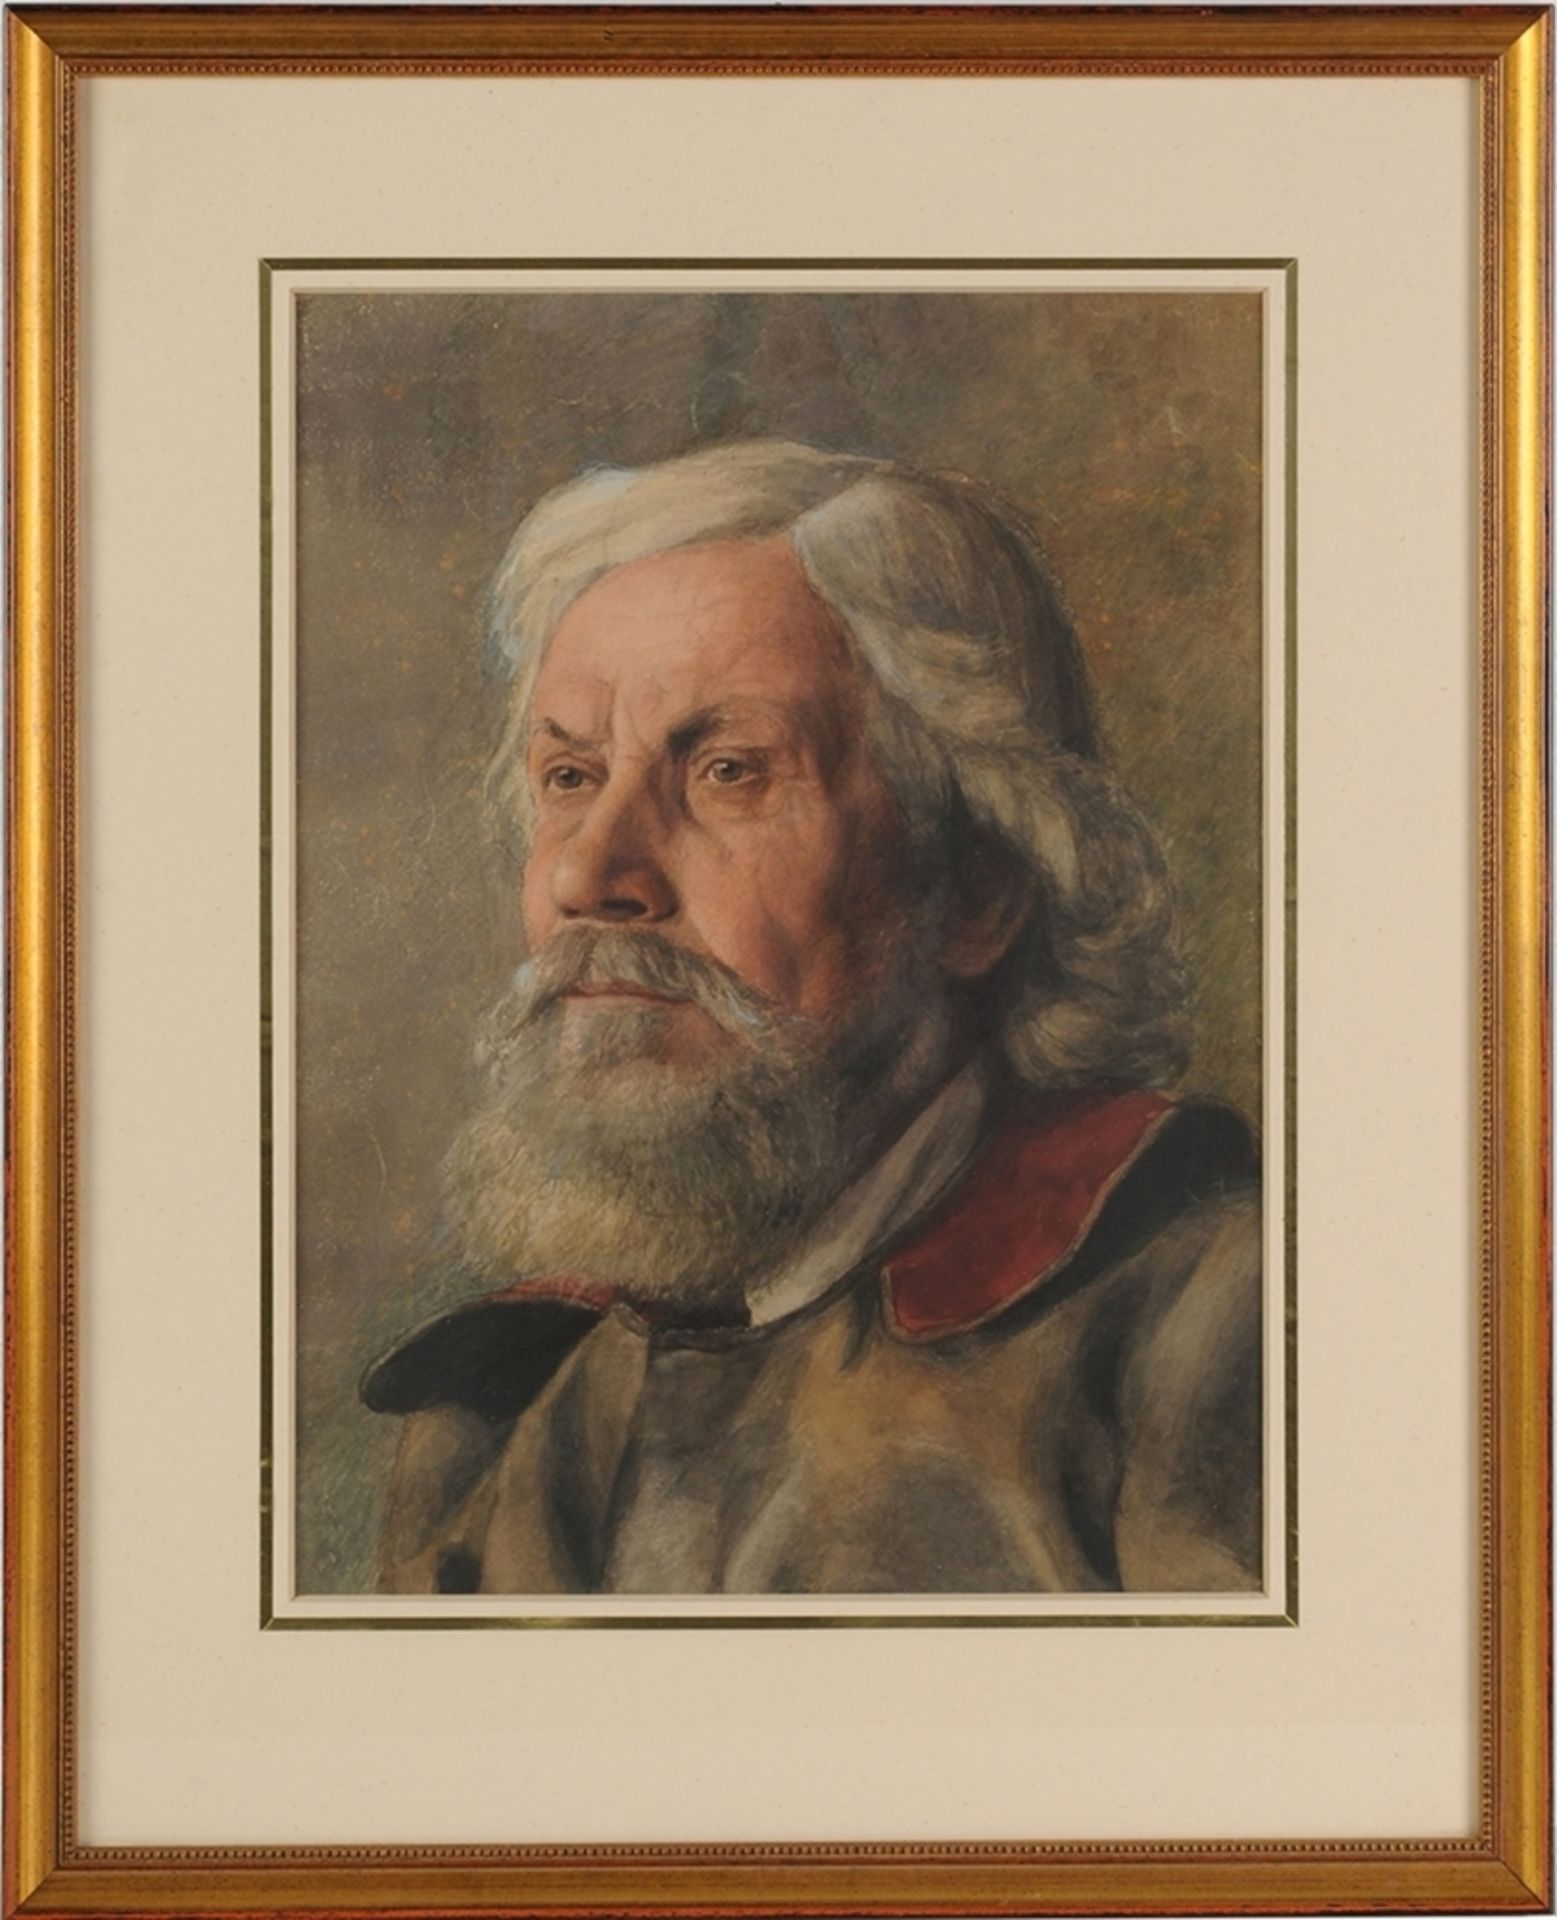 Unbekannt(Wohl deutscher Maler, um 1900) Aquarell/ Papier. Porträt eines bärtigen Mannes. S